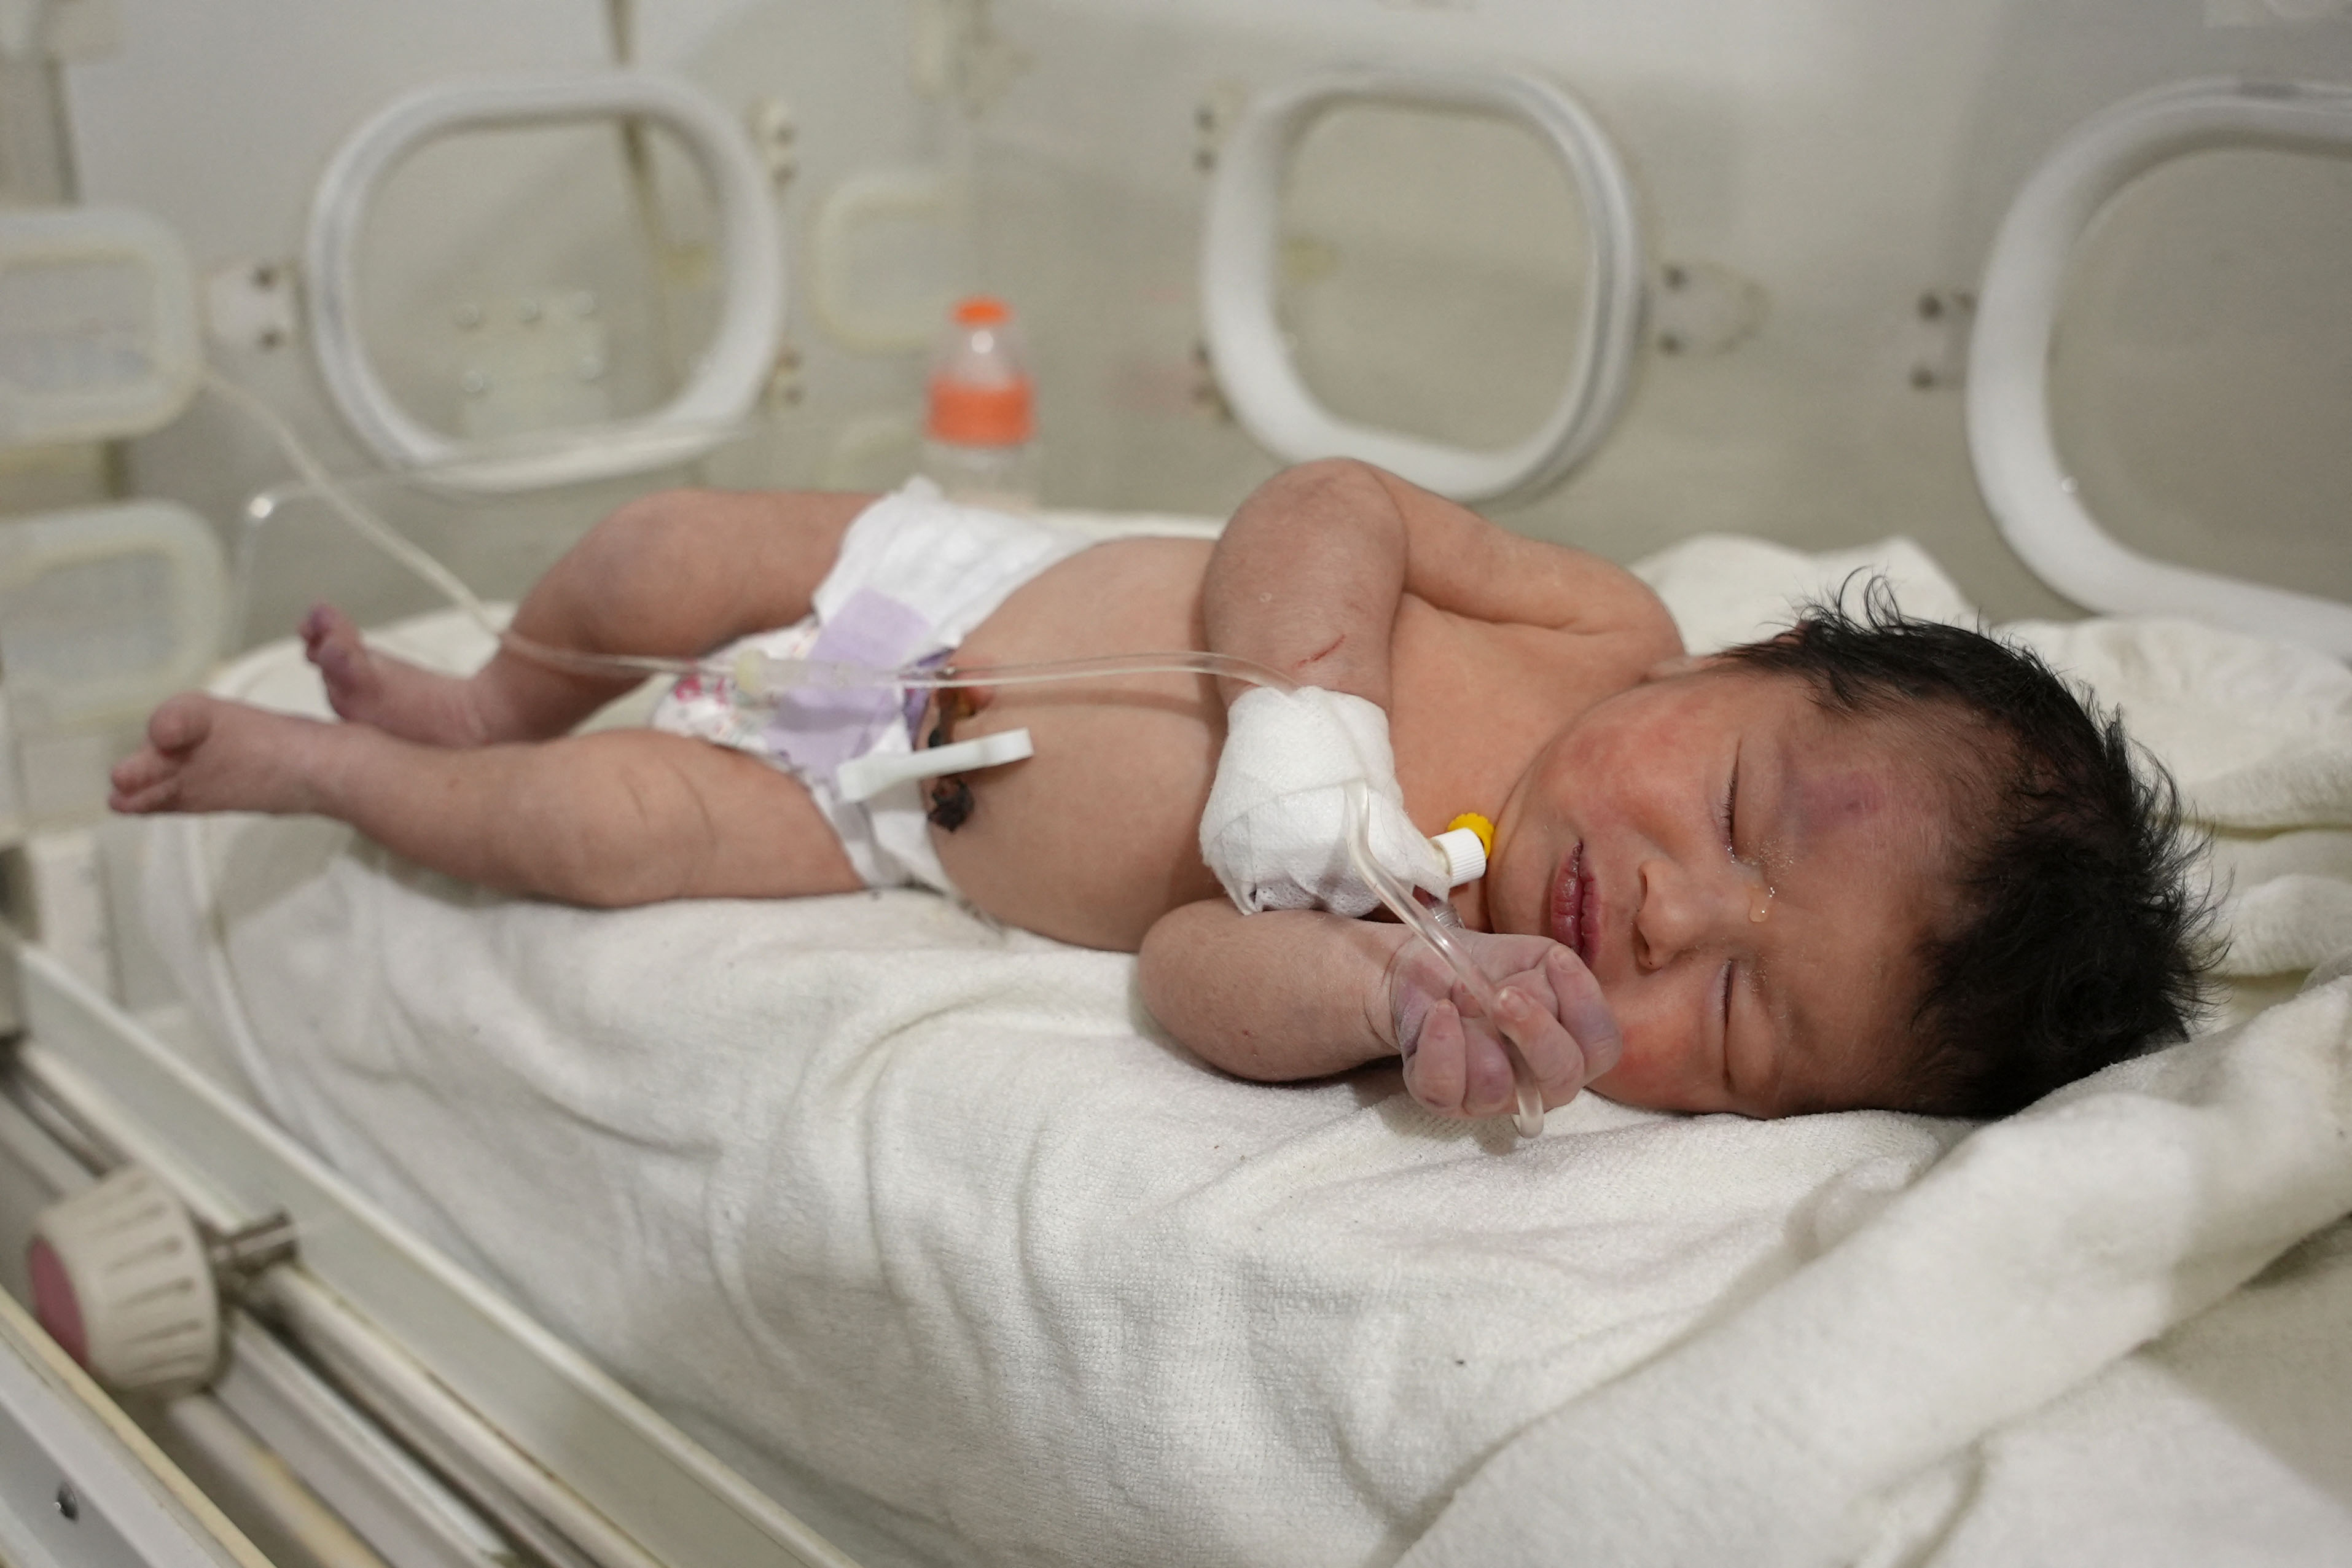 NEW BORN BABY, NAILIGTAS SA GUMUHONG GUSALI SA SYRIA